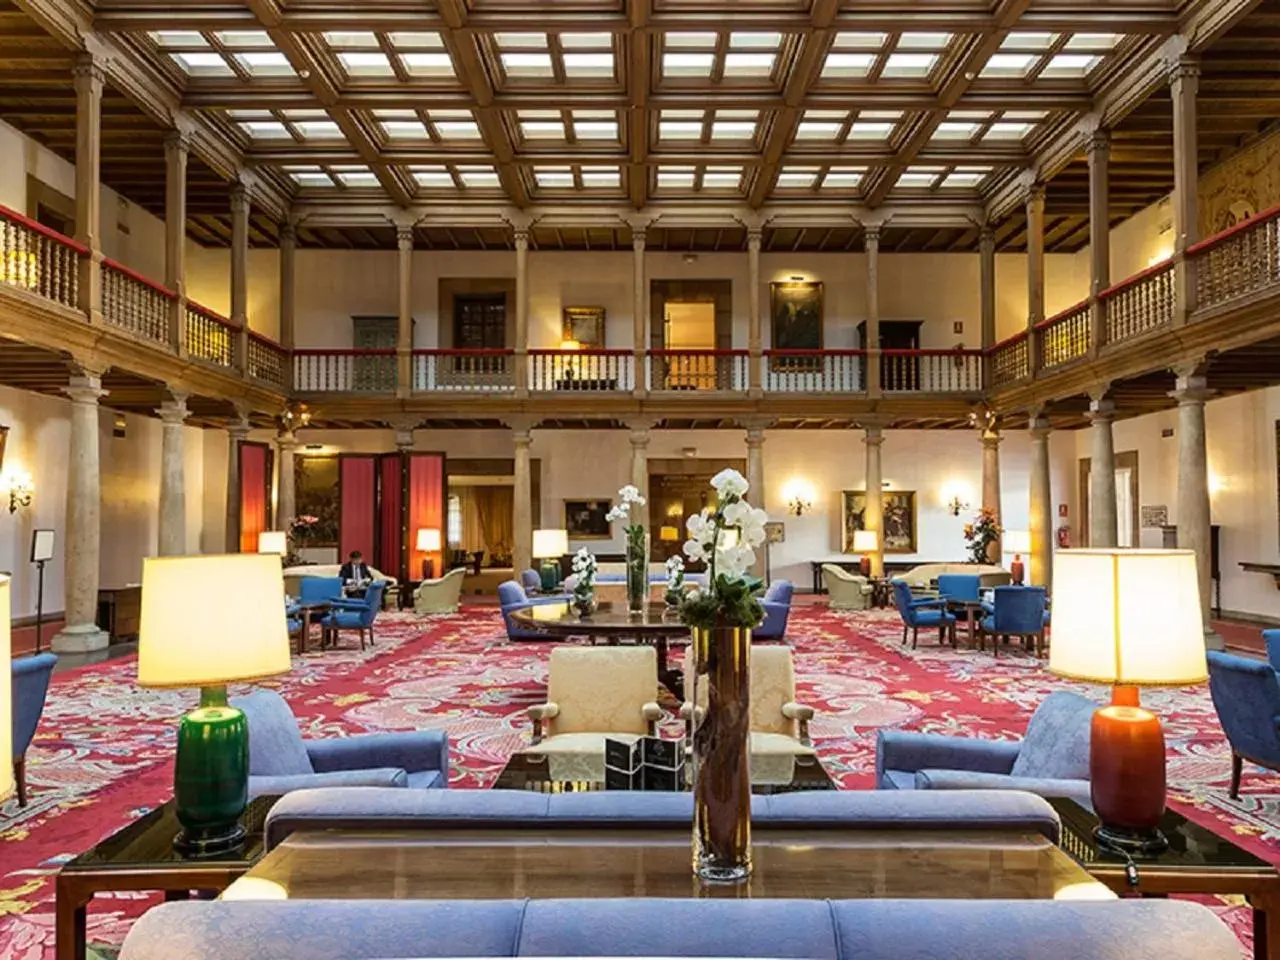 Lobby or reception in Eurostars Hotel de la Reconquista